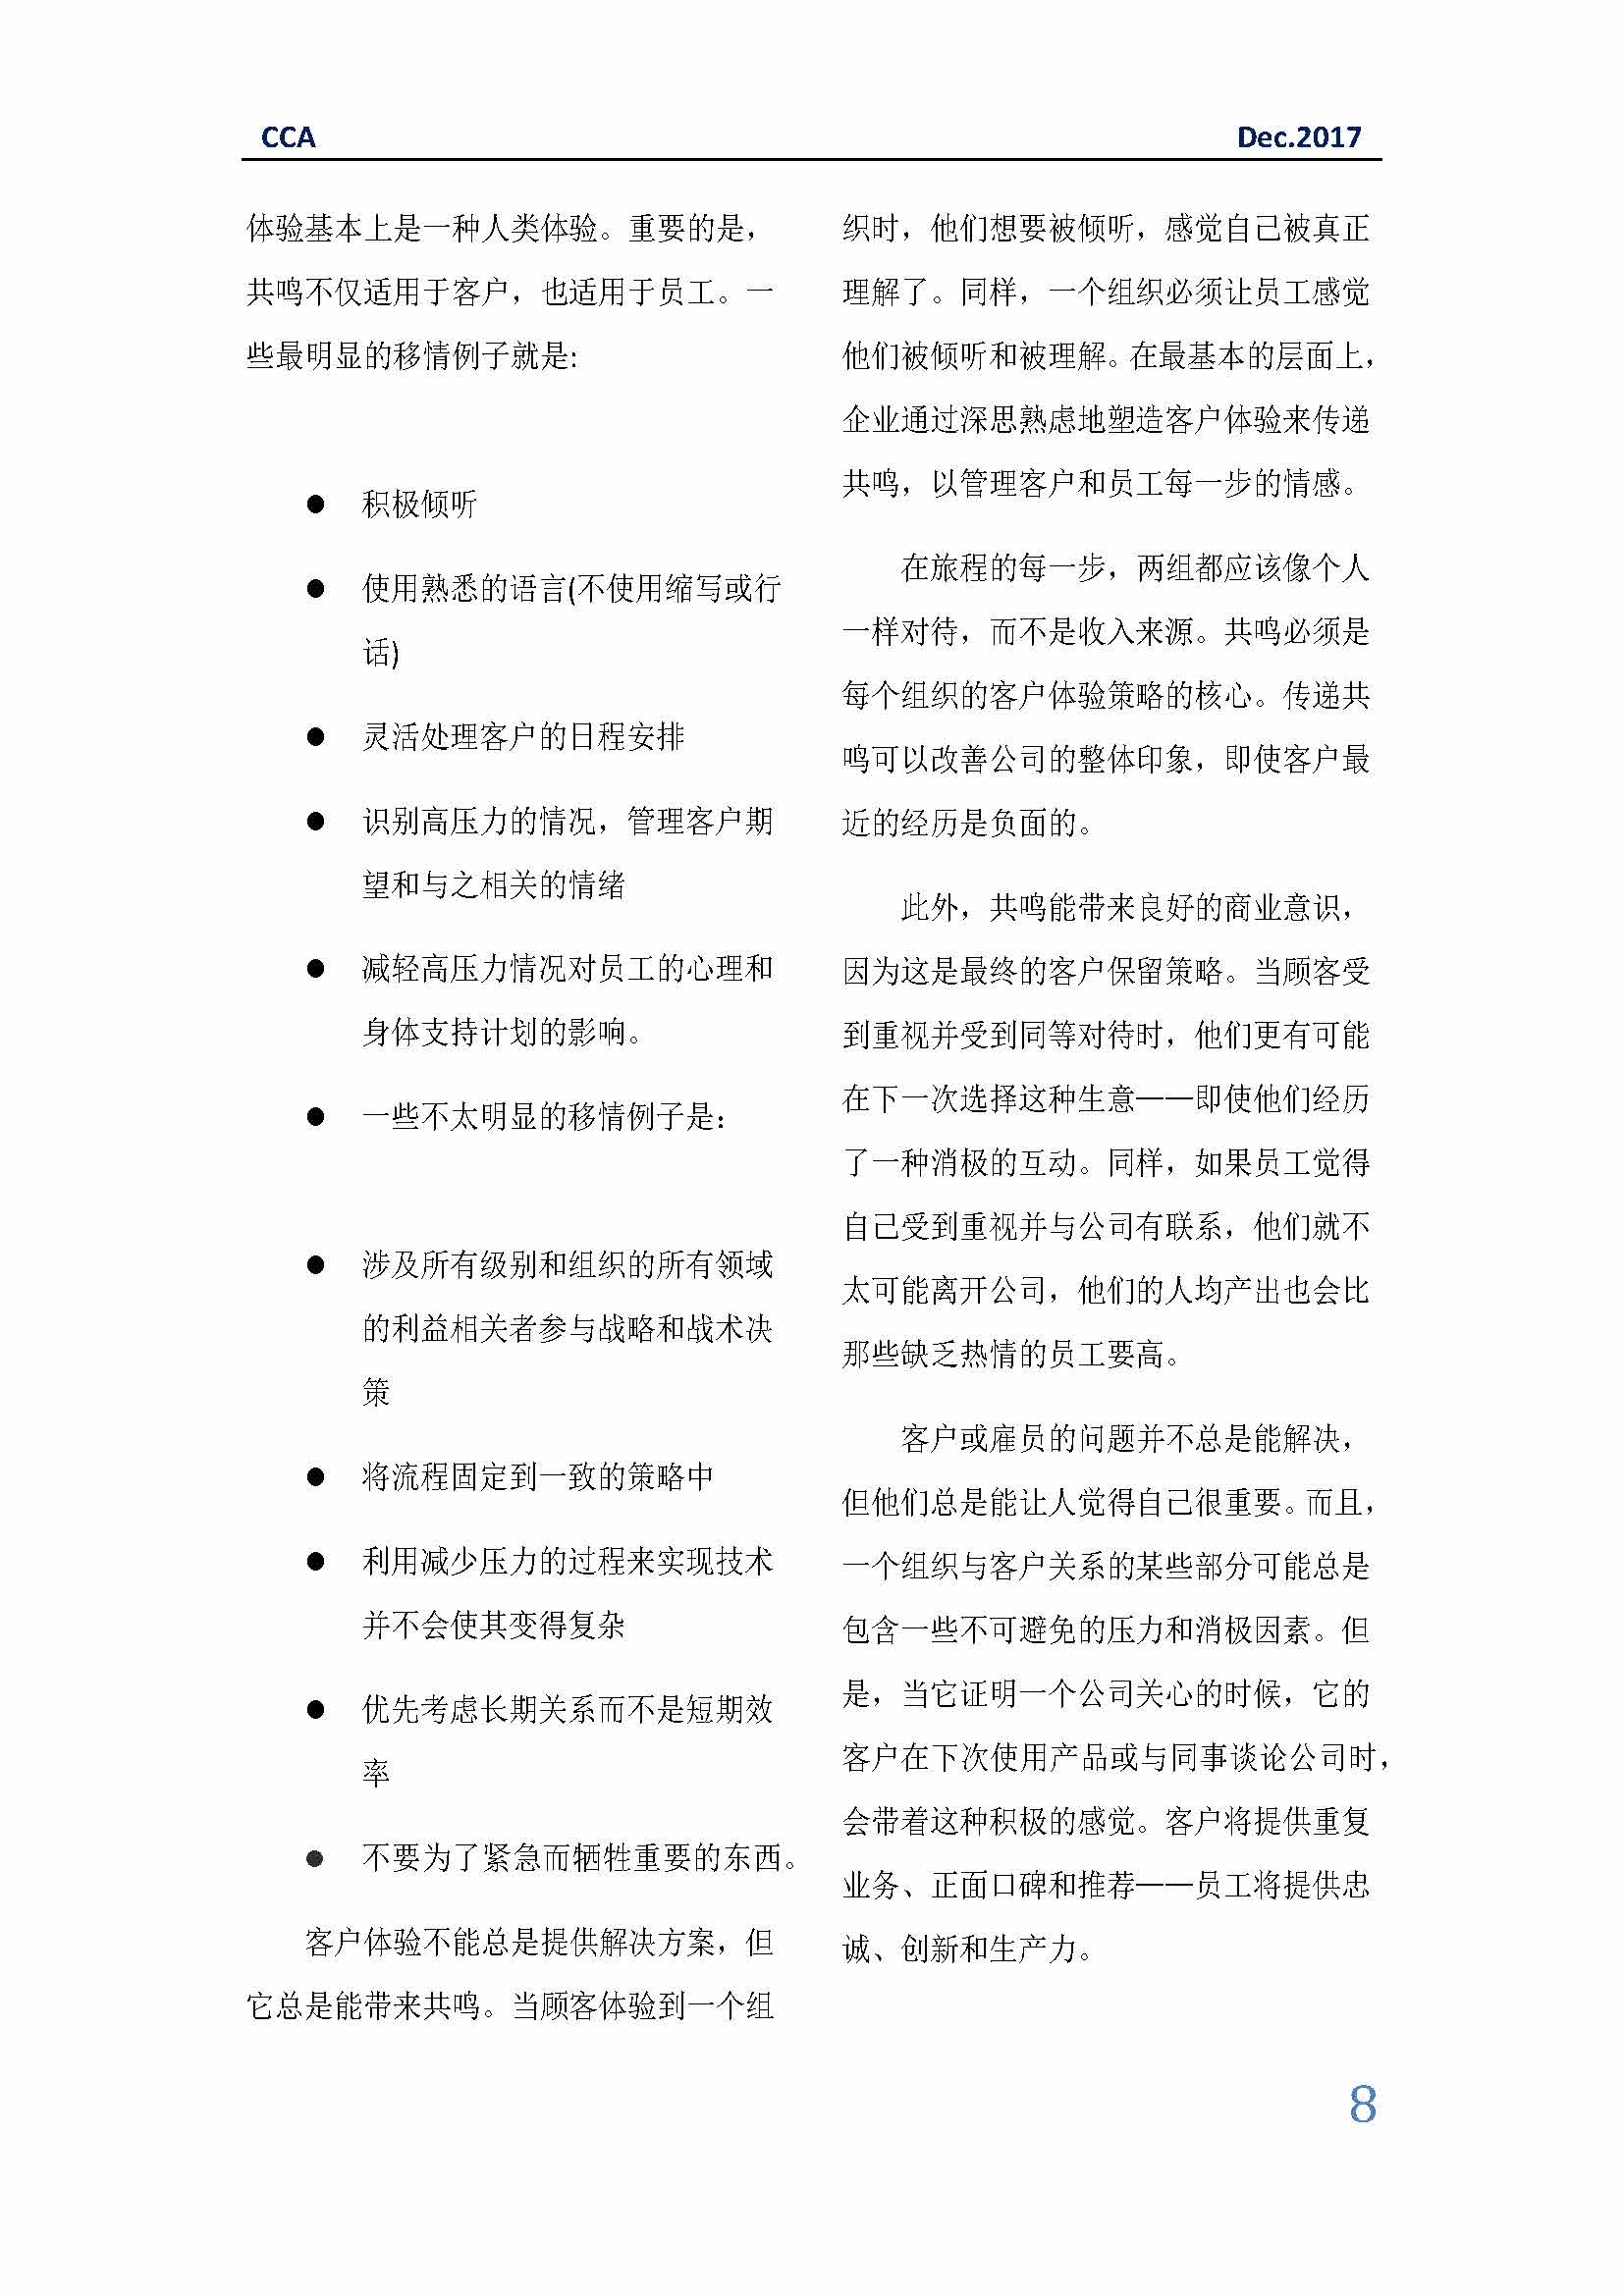 中国科技咨询协会国际快讯（第三十一期）_页面_08.jpg